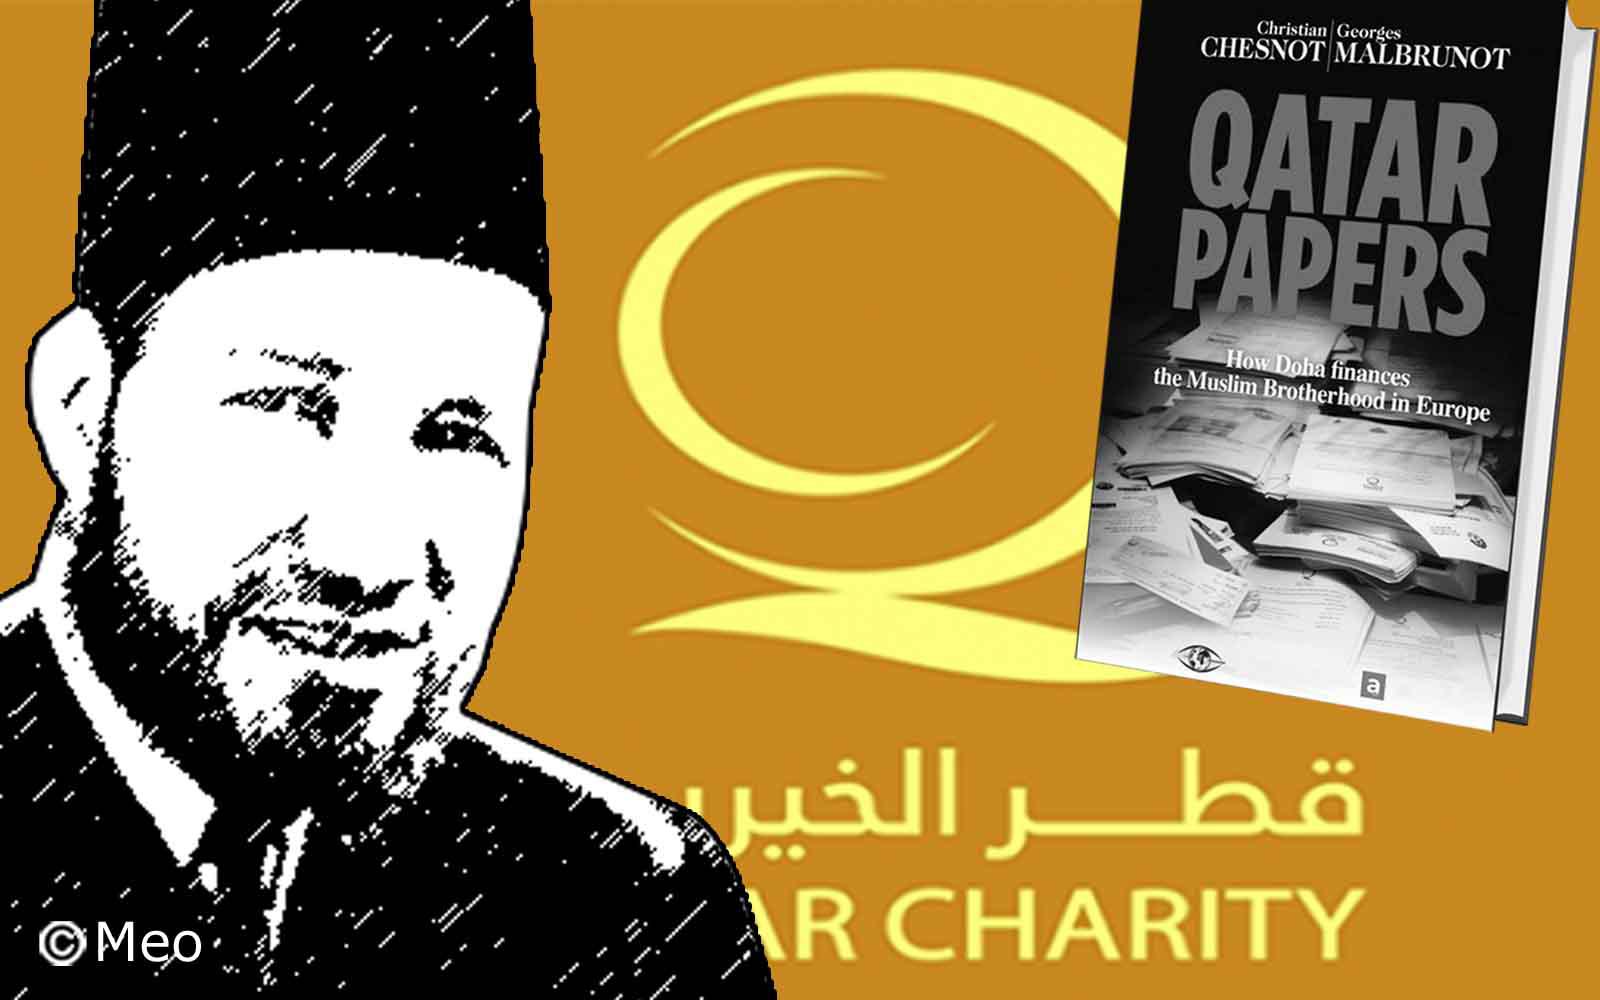 كتاب فرنسي يكشف خفايا الدعوة الدينية في اوروبا على طريقة "قطر الخيرية" بنهج مؤسس الإخوان